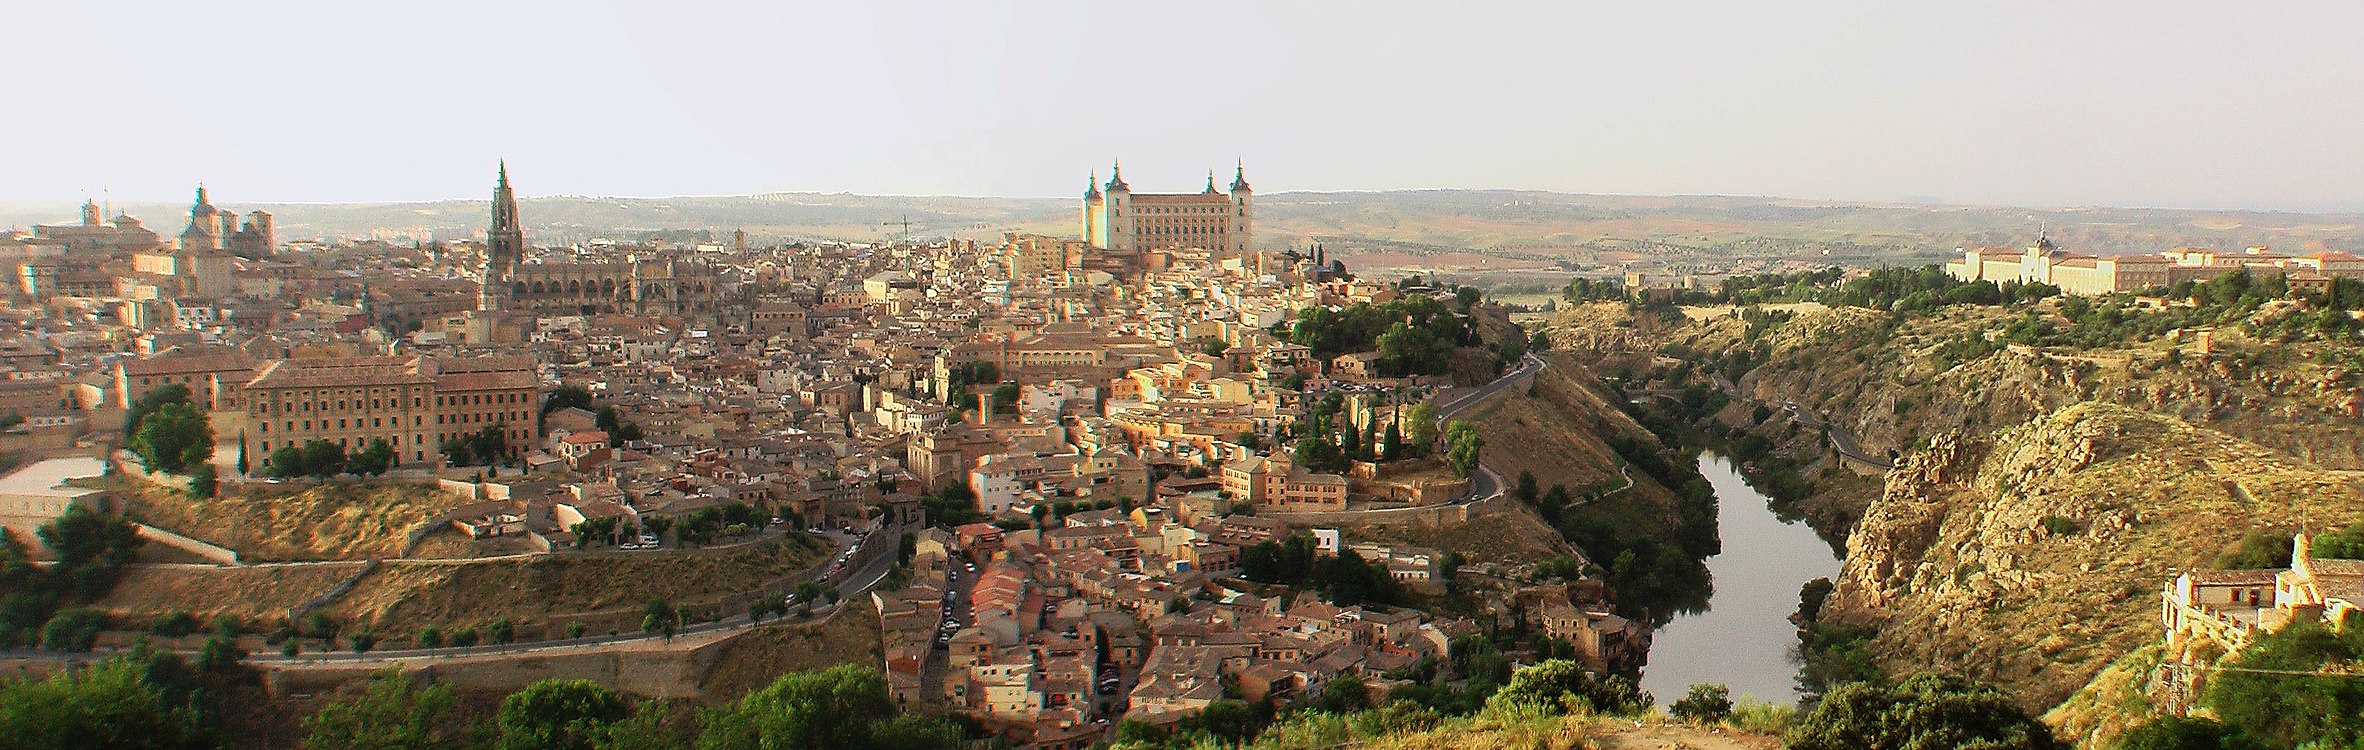 Het panorama van Toledo